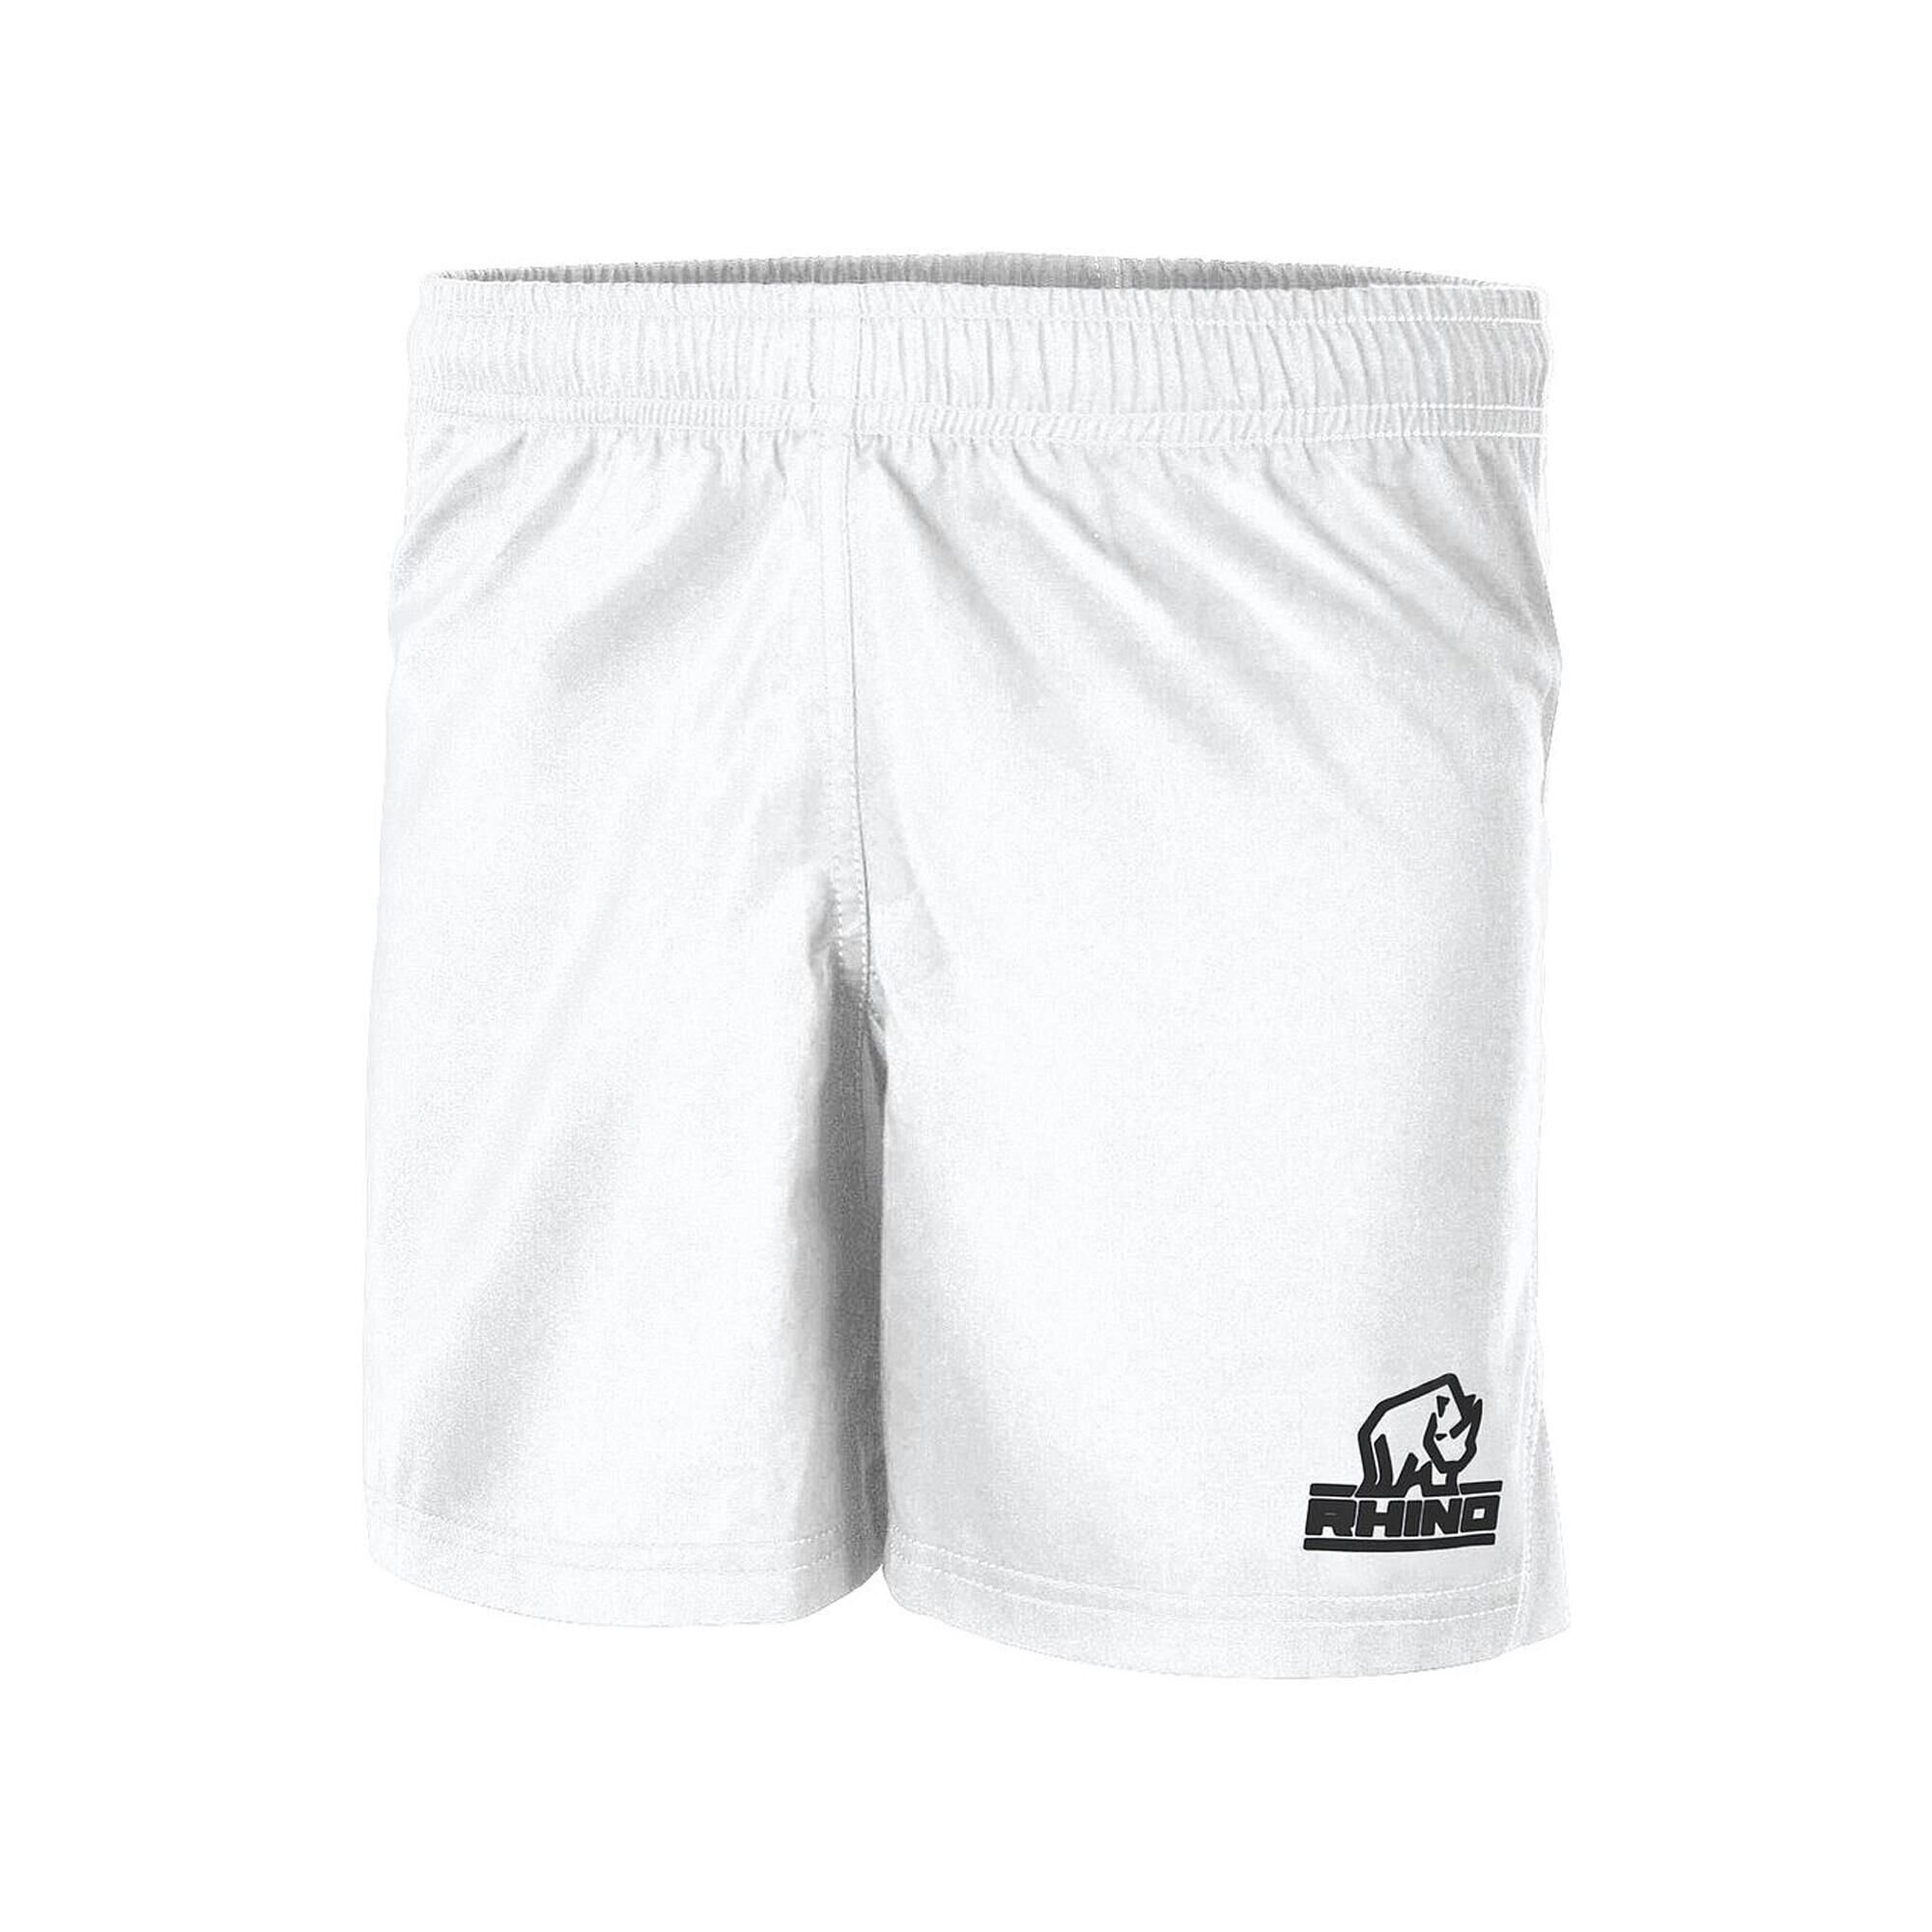 RHINO Unisex Adult Auckland Shorts (White)